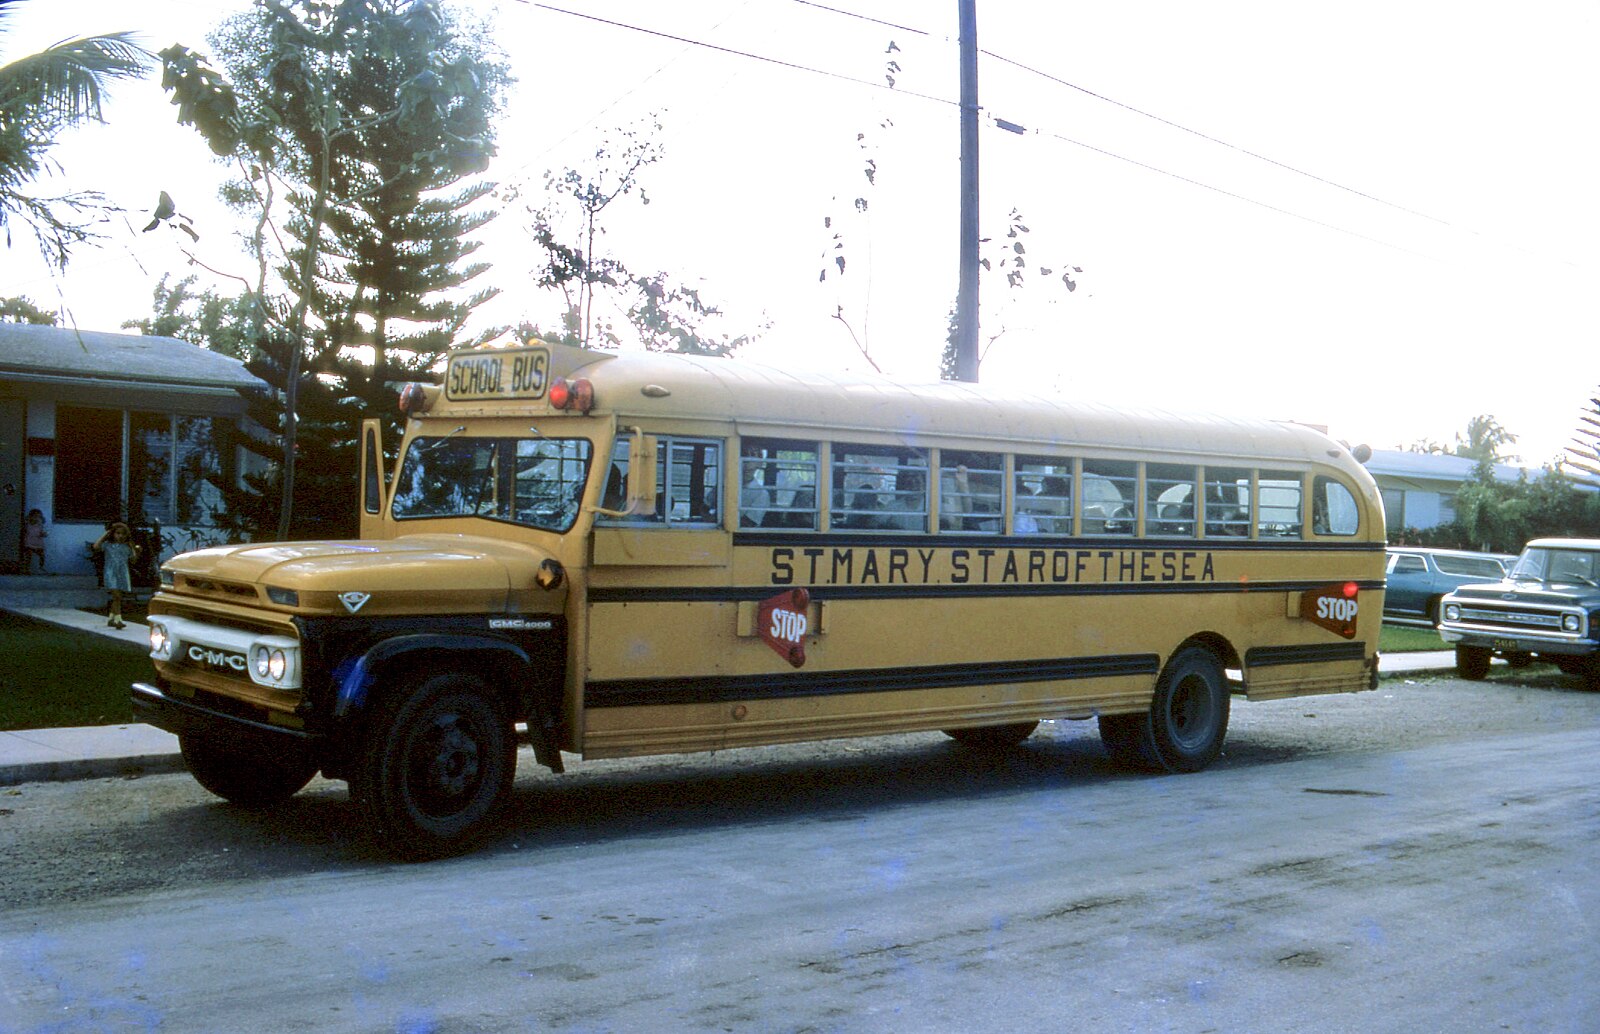 Кладбище школьных автобусов 2 20. GMC 6000 1973 школьный автобус. GMC 6000 школьный автобус салон. Кладбище школьных автобусов. Кладбище школьных автобусов персонажи.